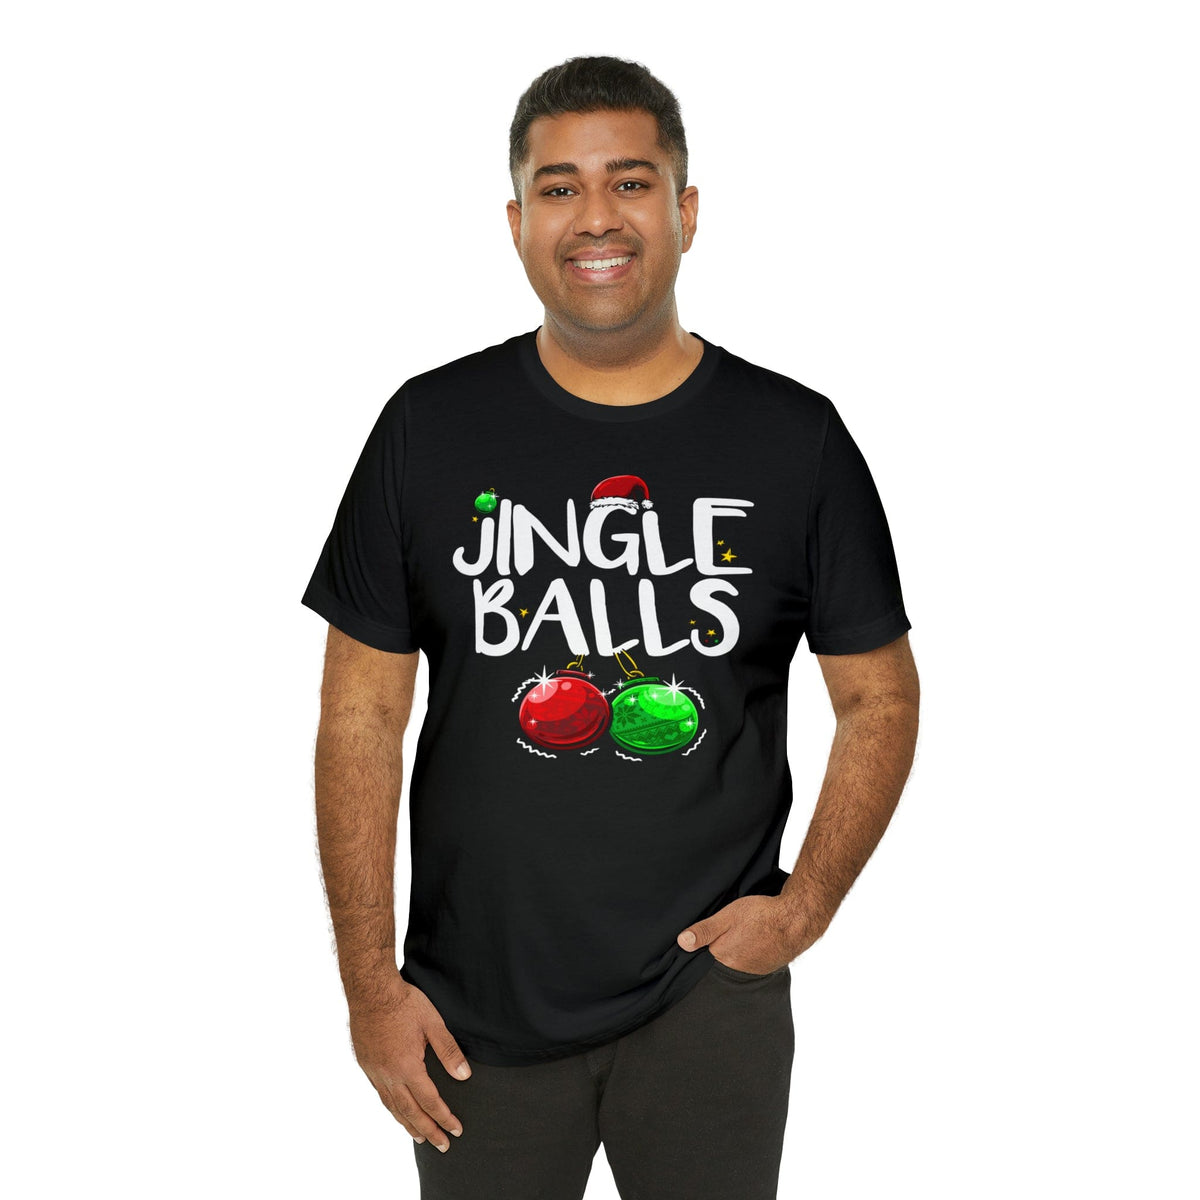 Jingle Balls Unisex Tee